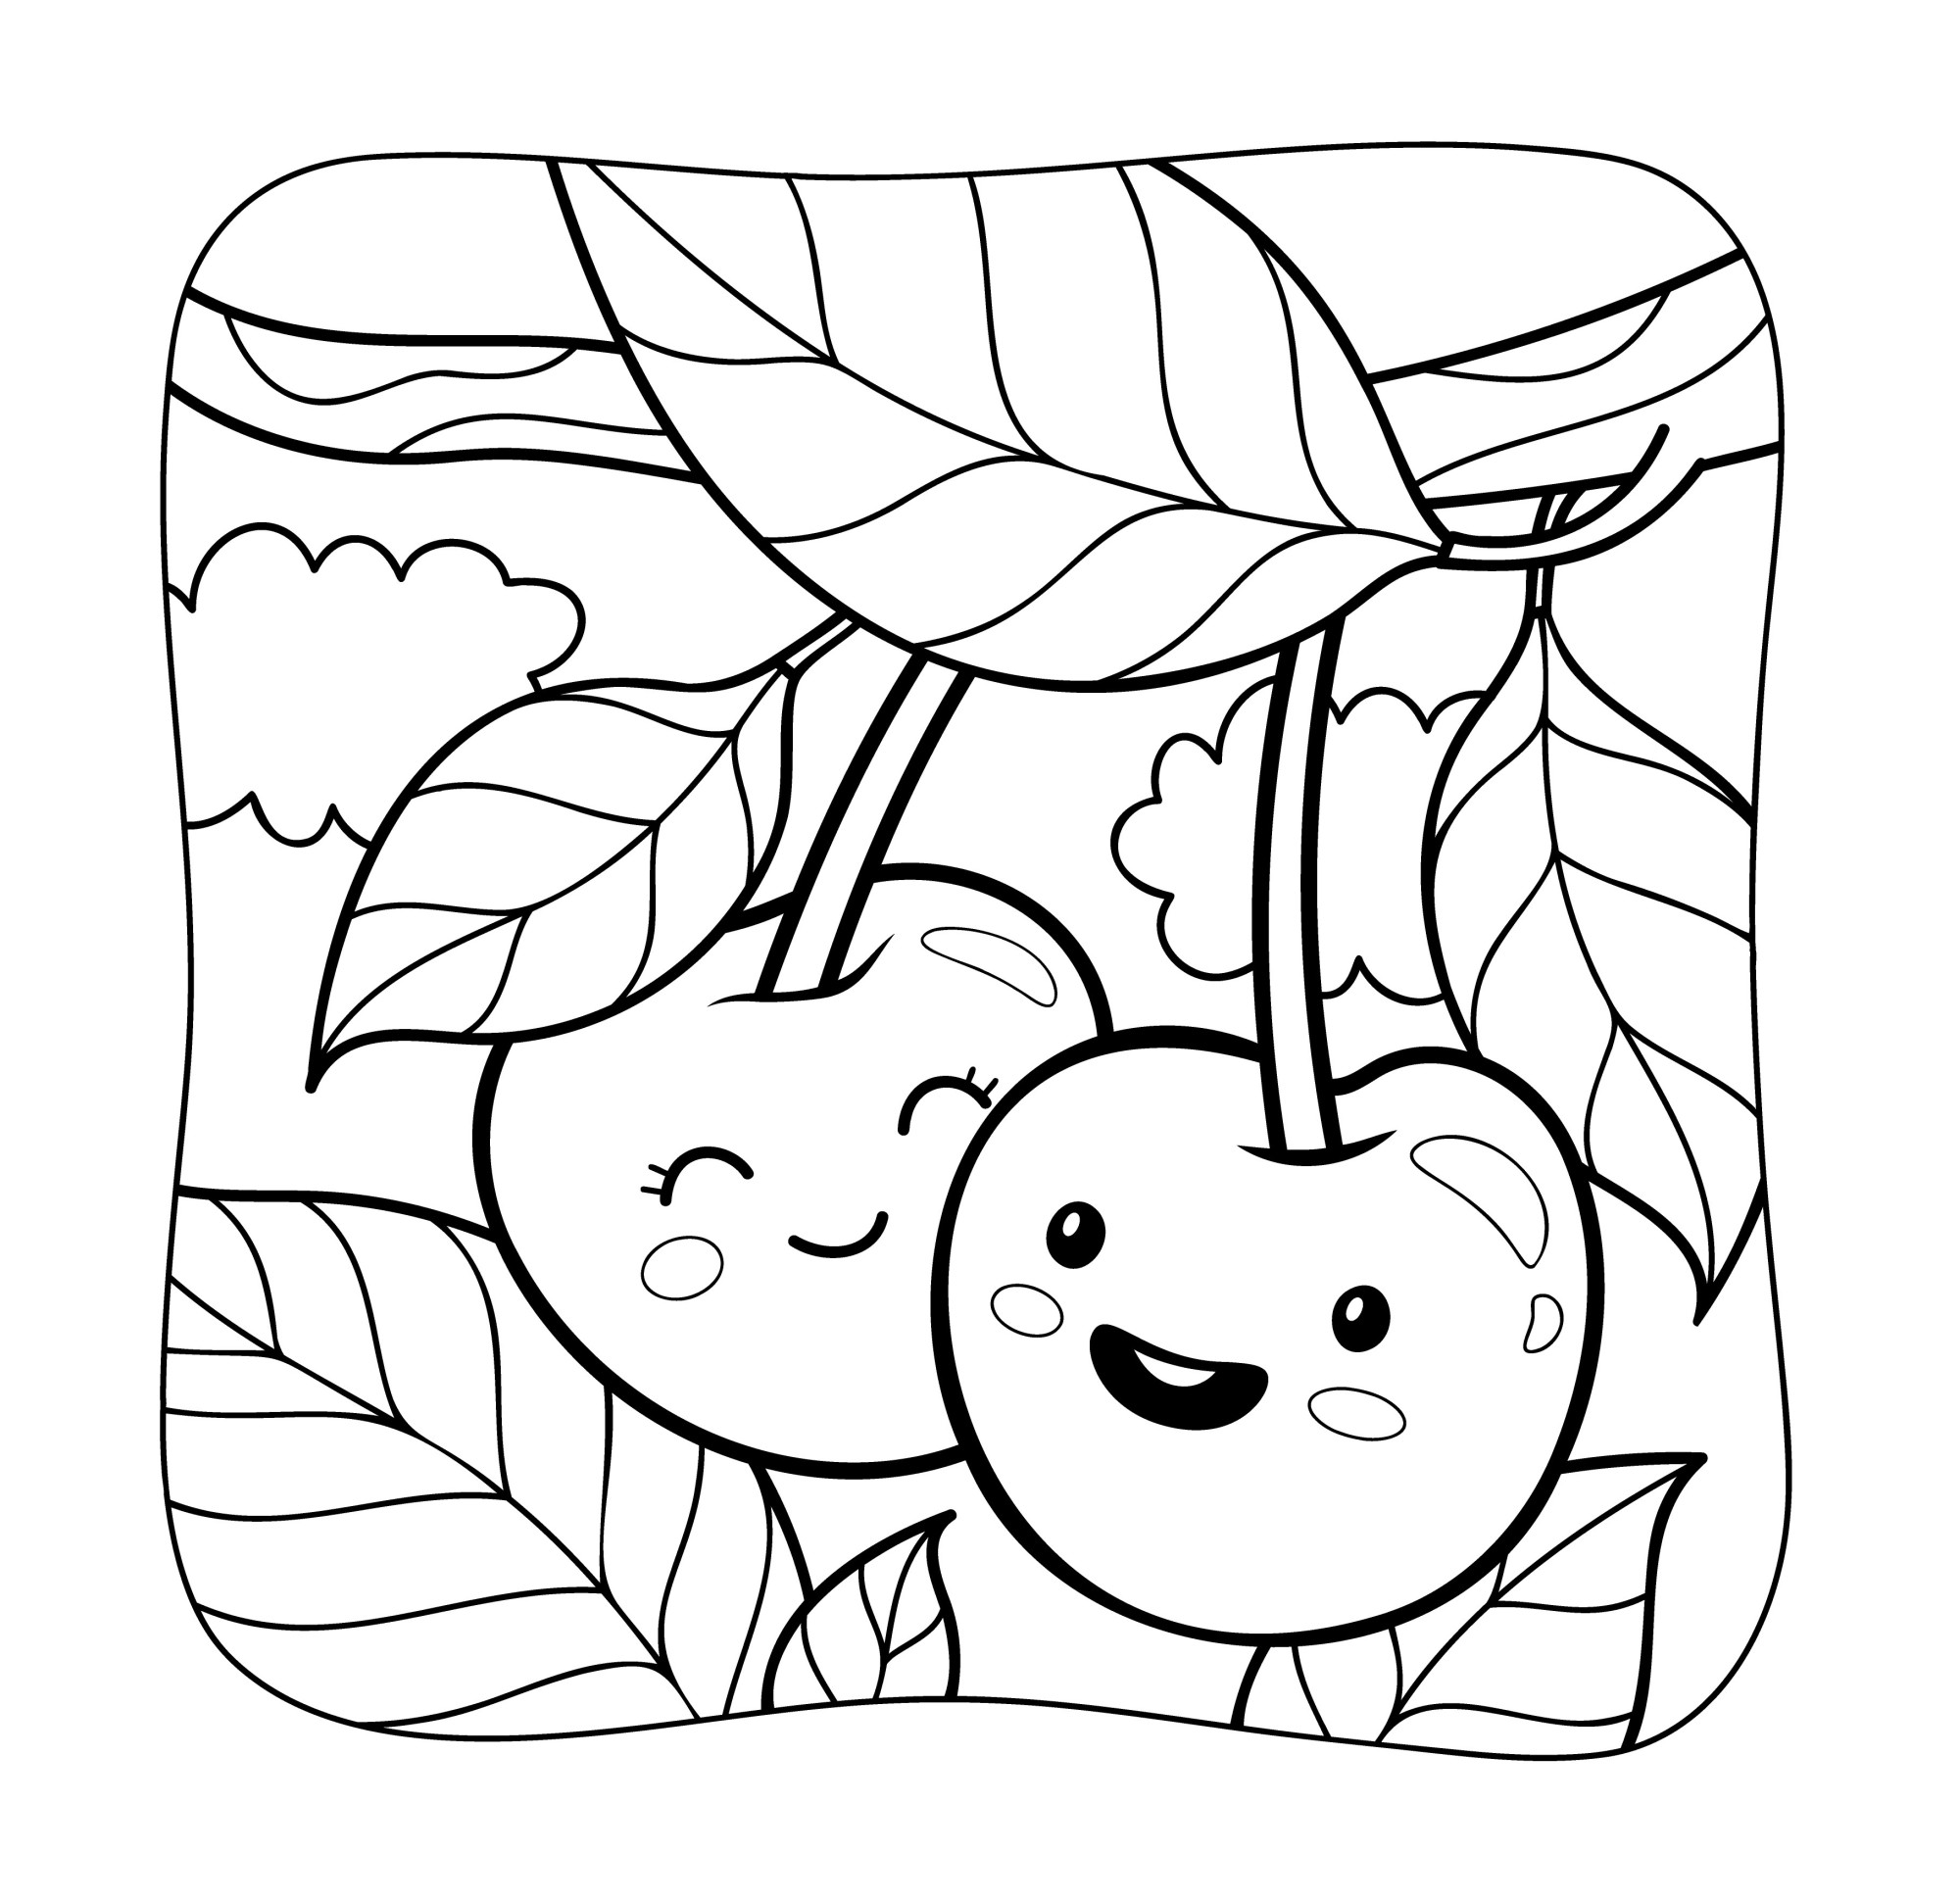 Раскраска для детей: ягоды с лицом на веточке дерева вишни